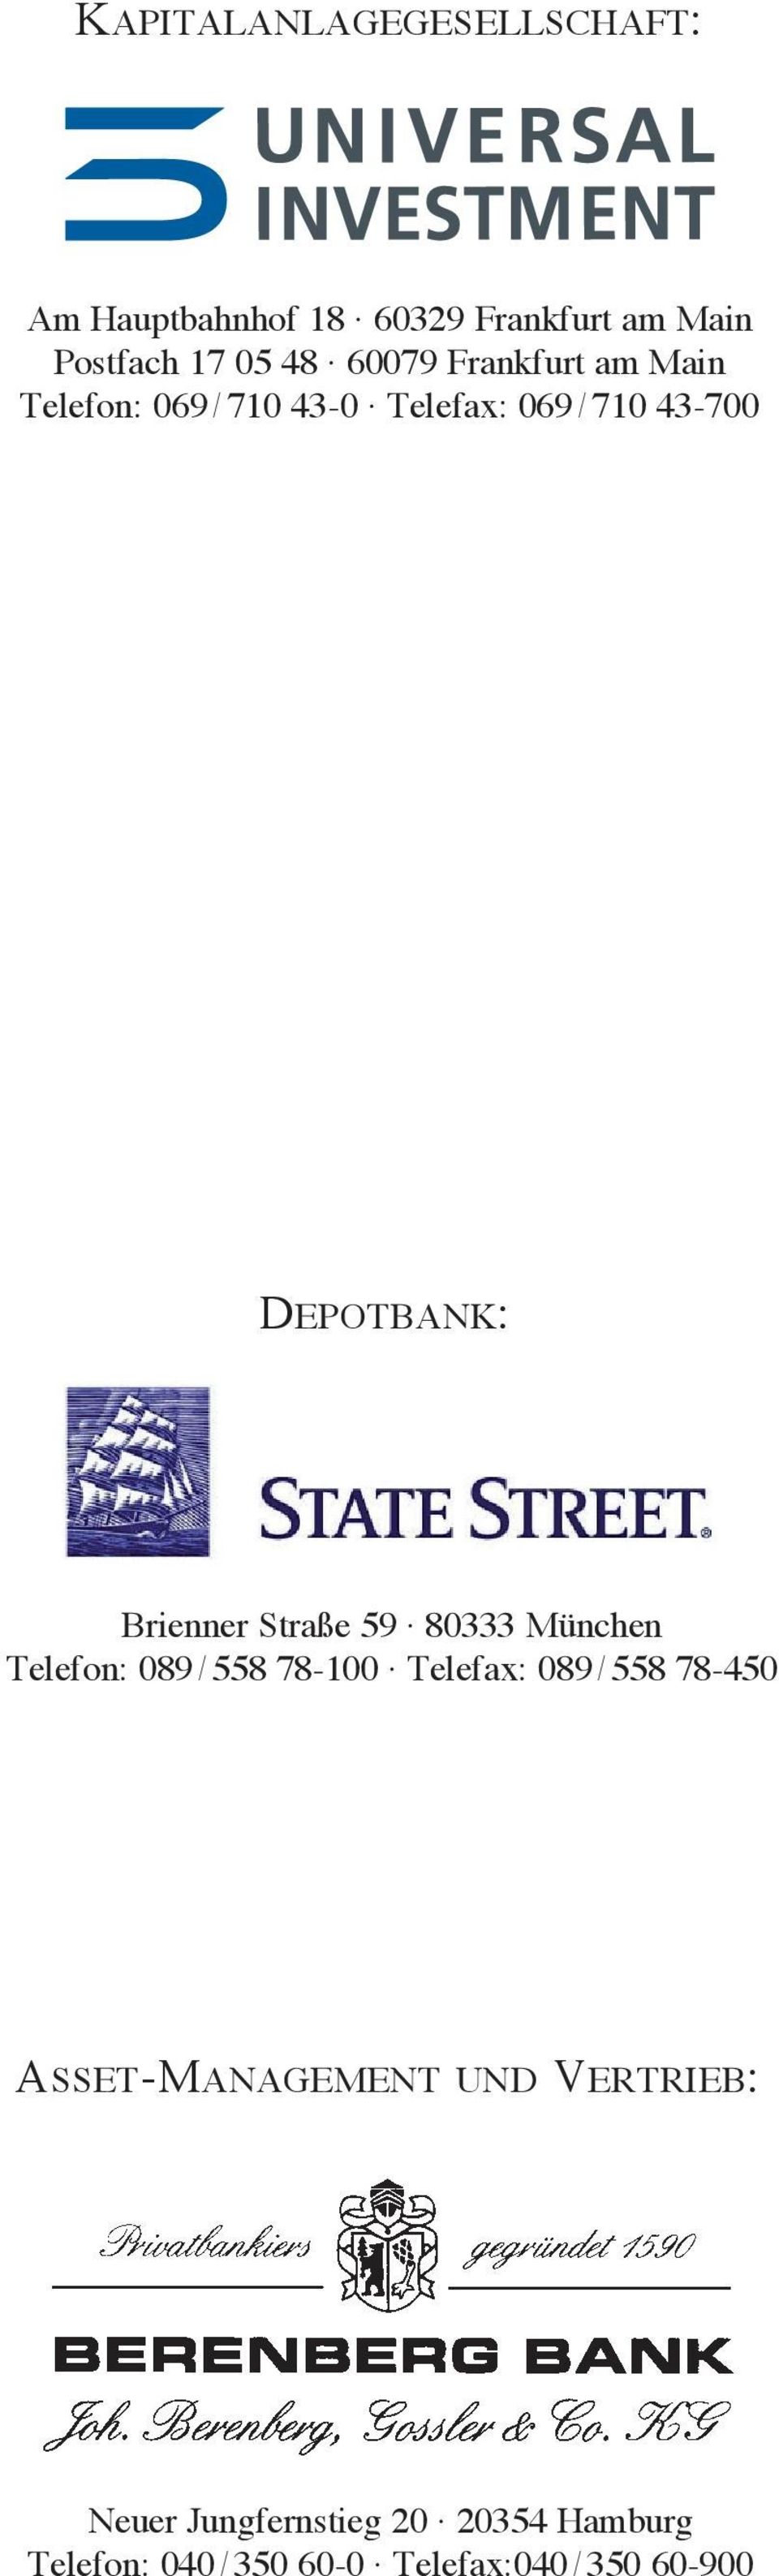 Brienner Straße 59 80333 München Telefon: 089 / 558 78-100 Telefax: 089 / 558 78-450